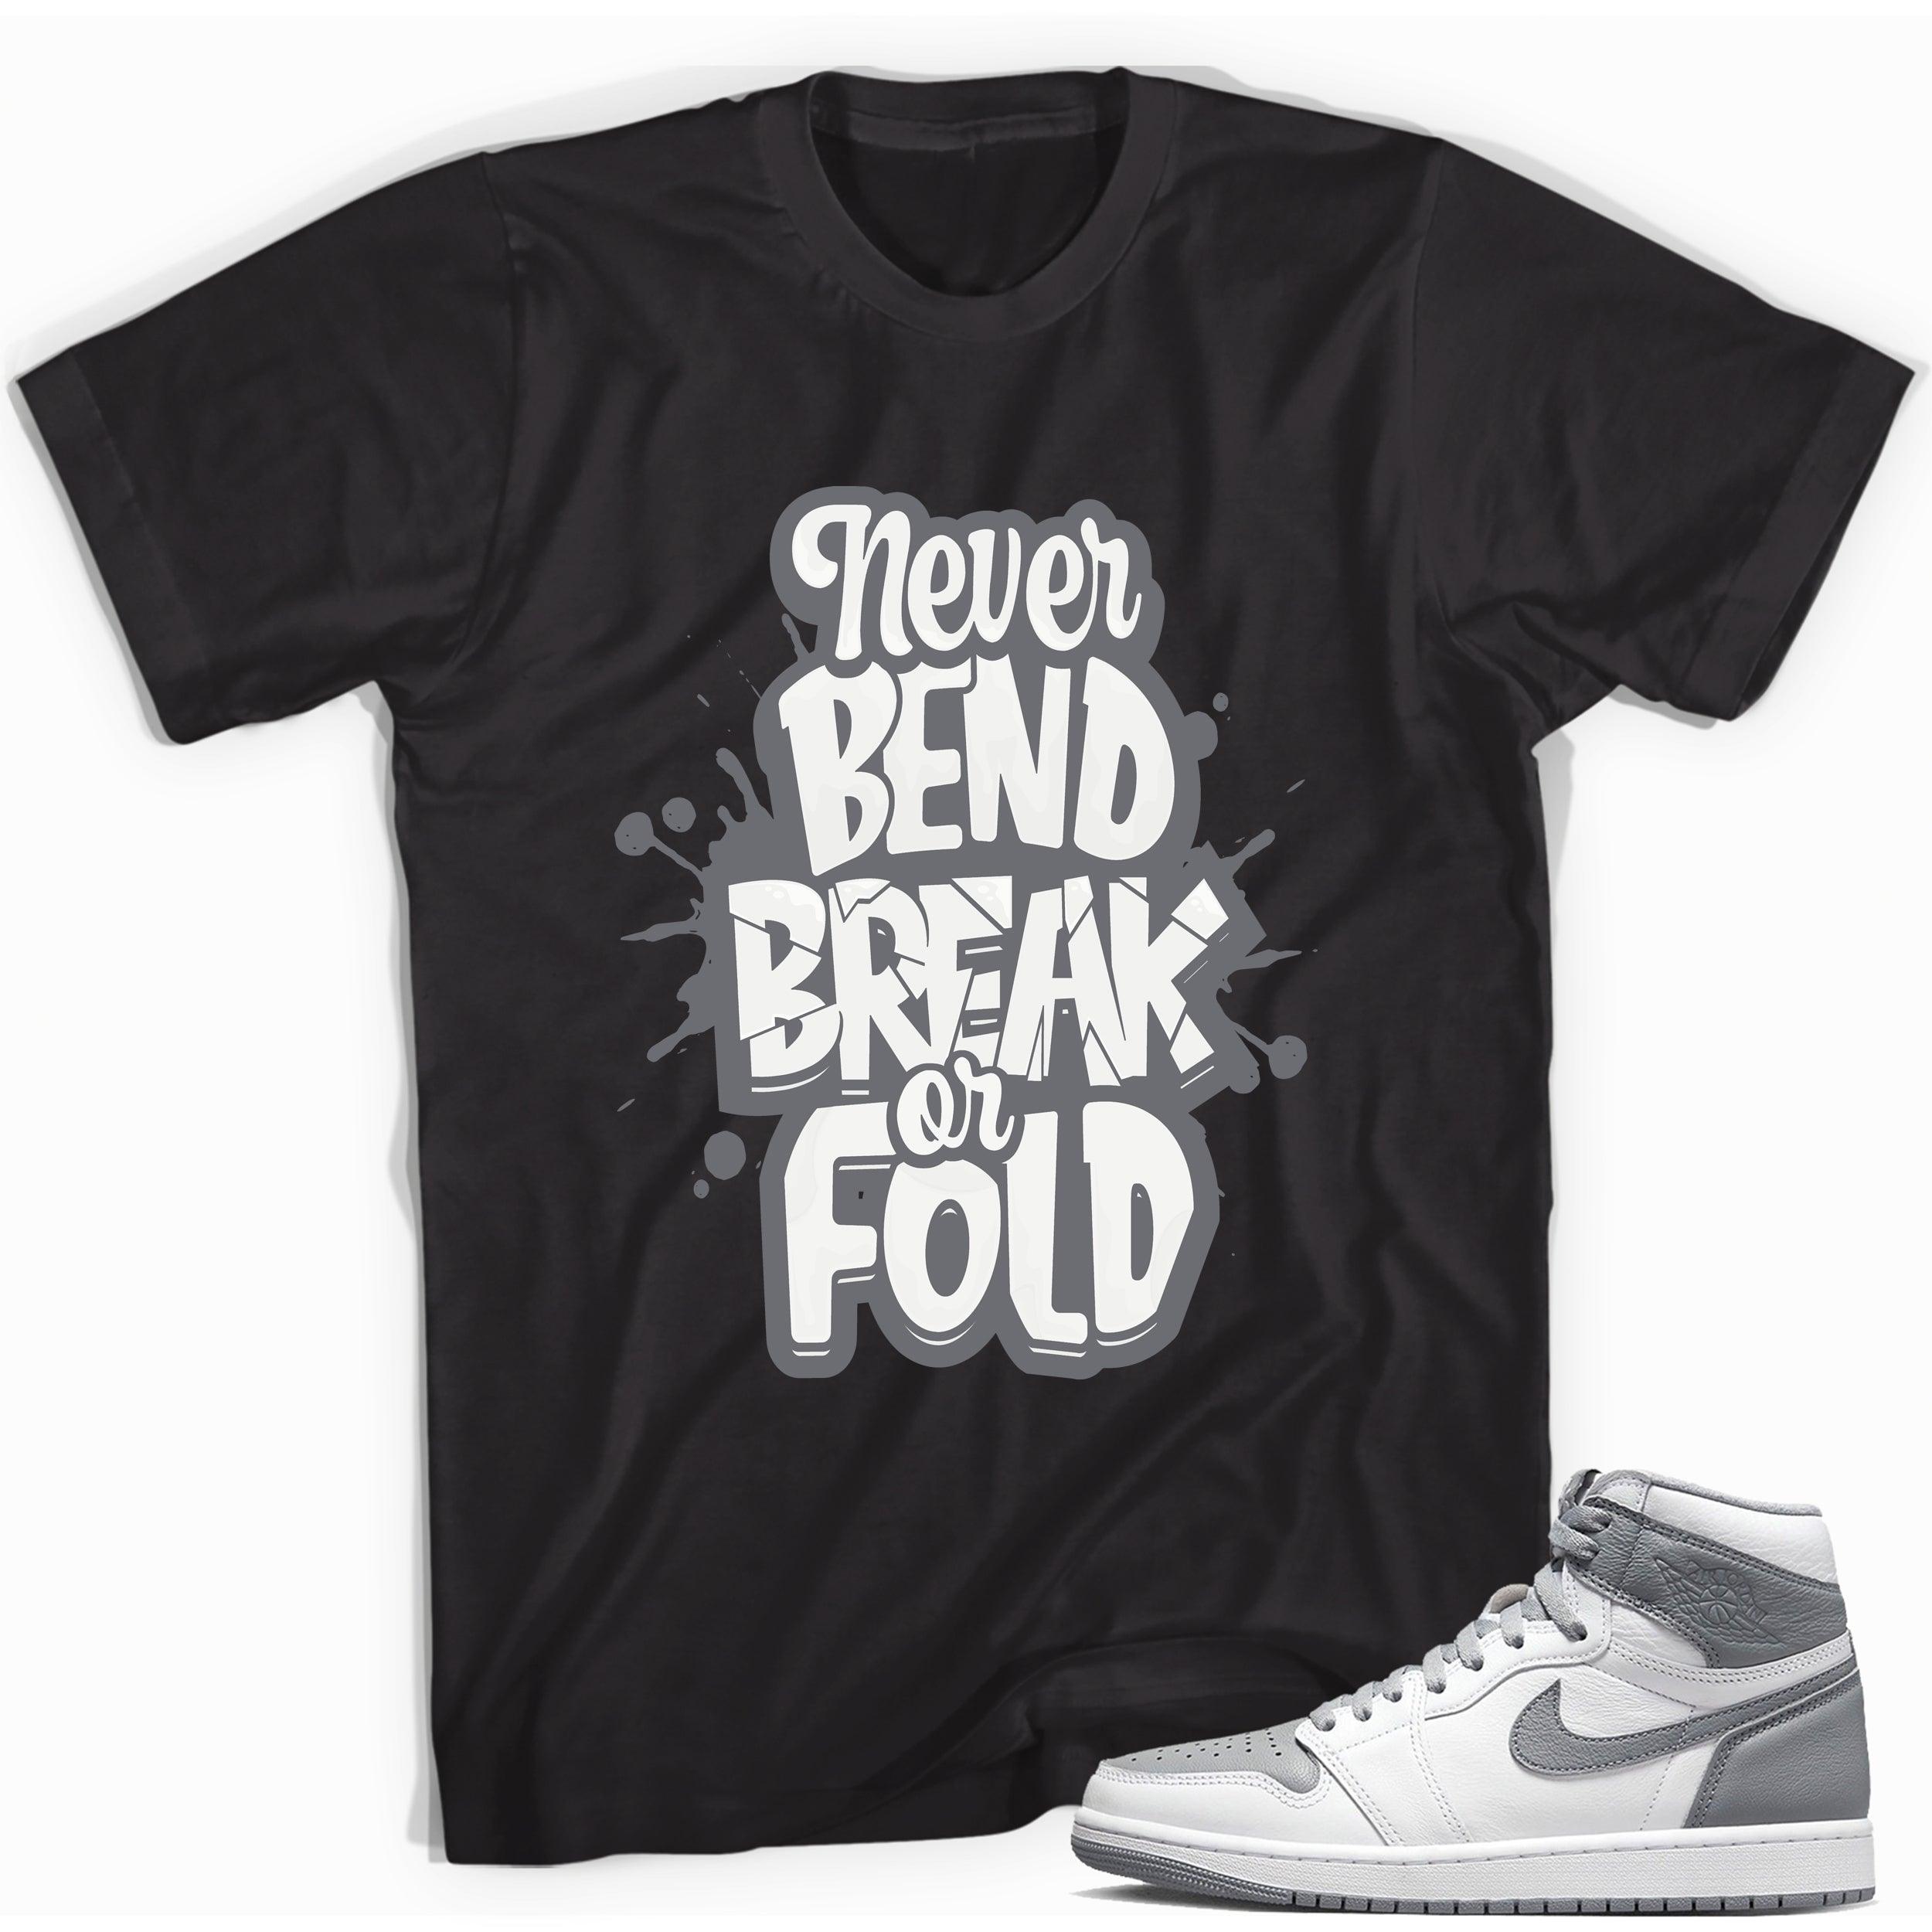 Jordan 1s High OG Stealth Shirt - Never Bend Break or Fold - Sneaker Shirts Outlet